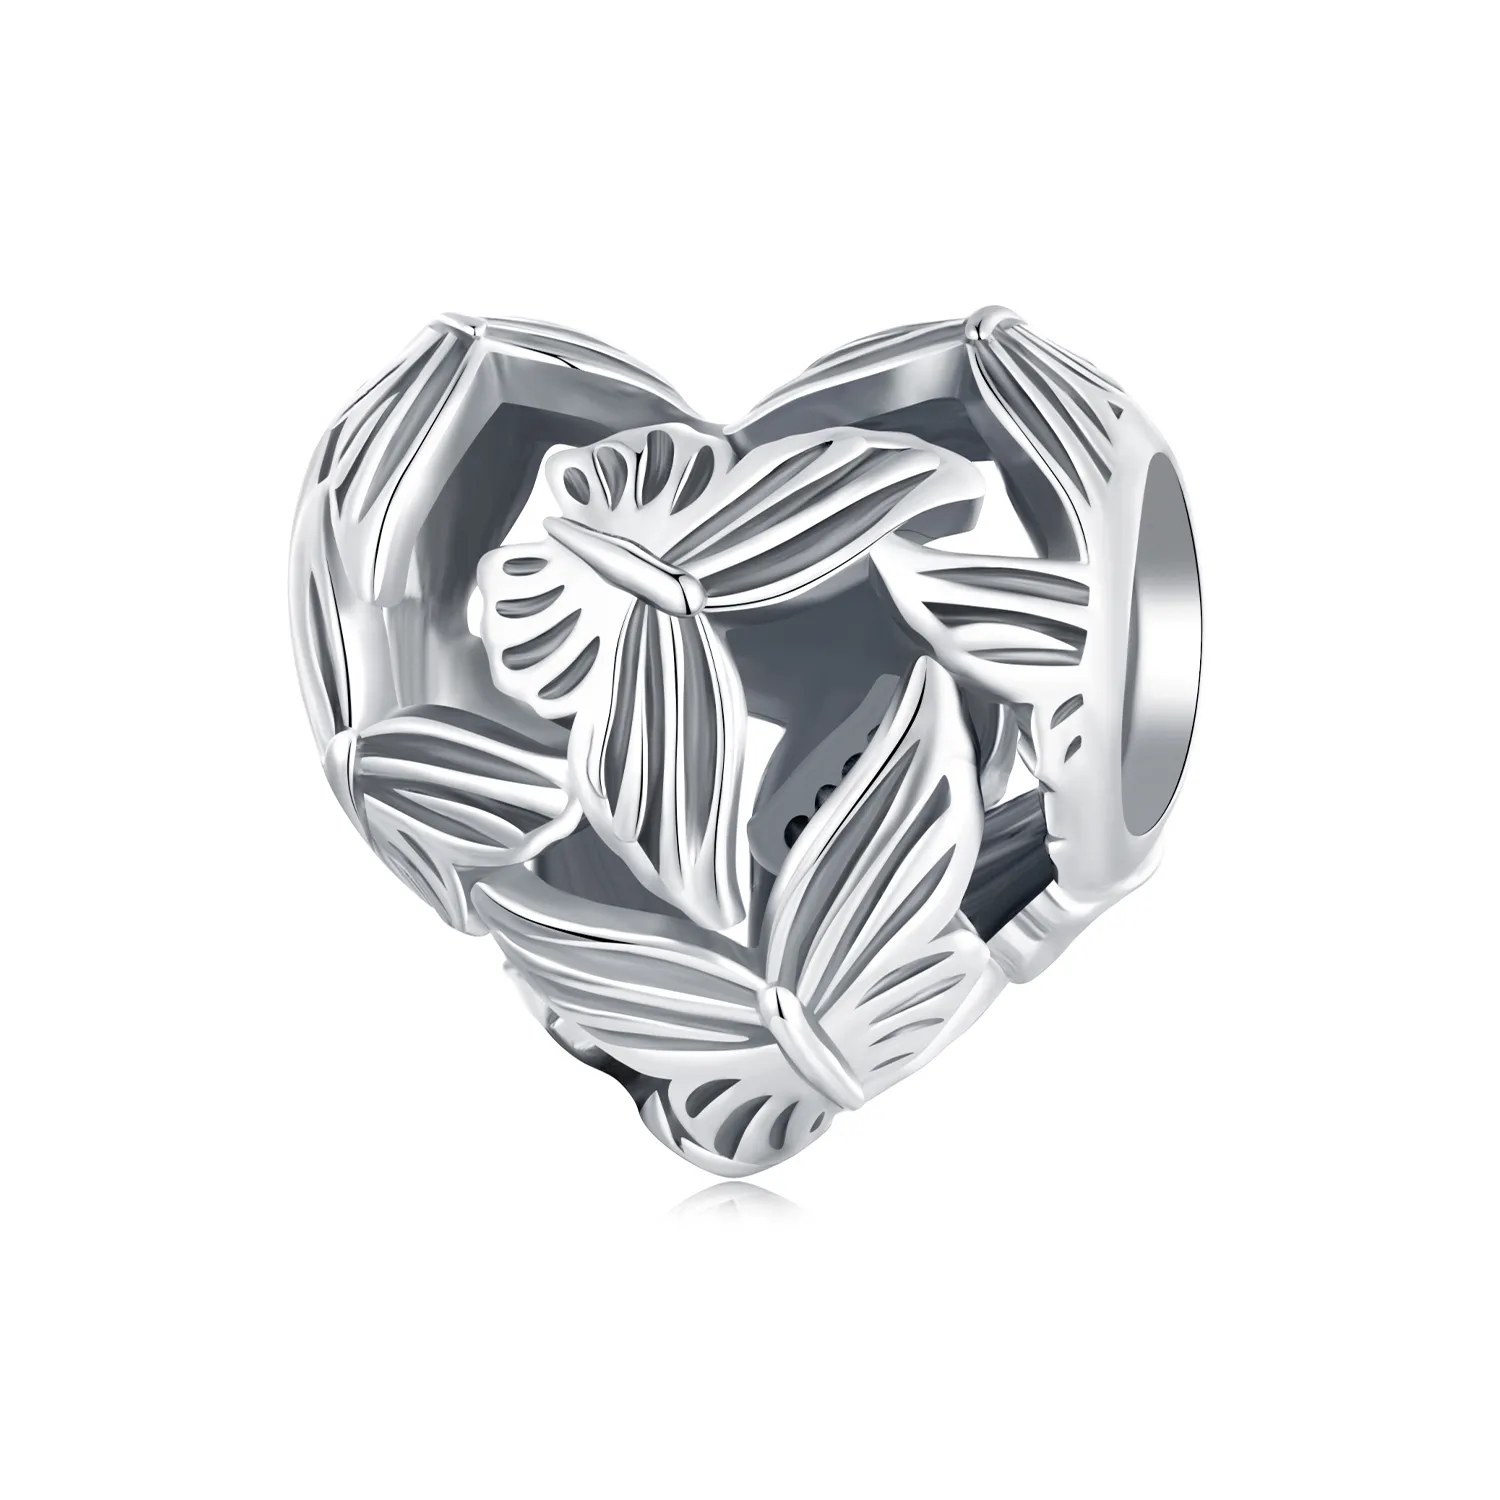 Pandora Stil Inimă în formă de fluture Pandantiv - SCC2576